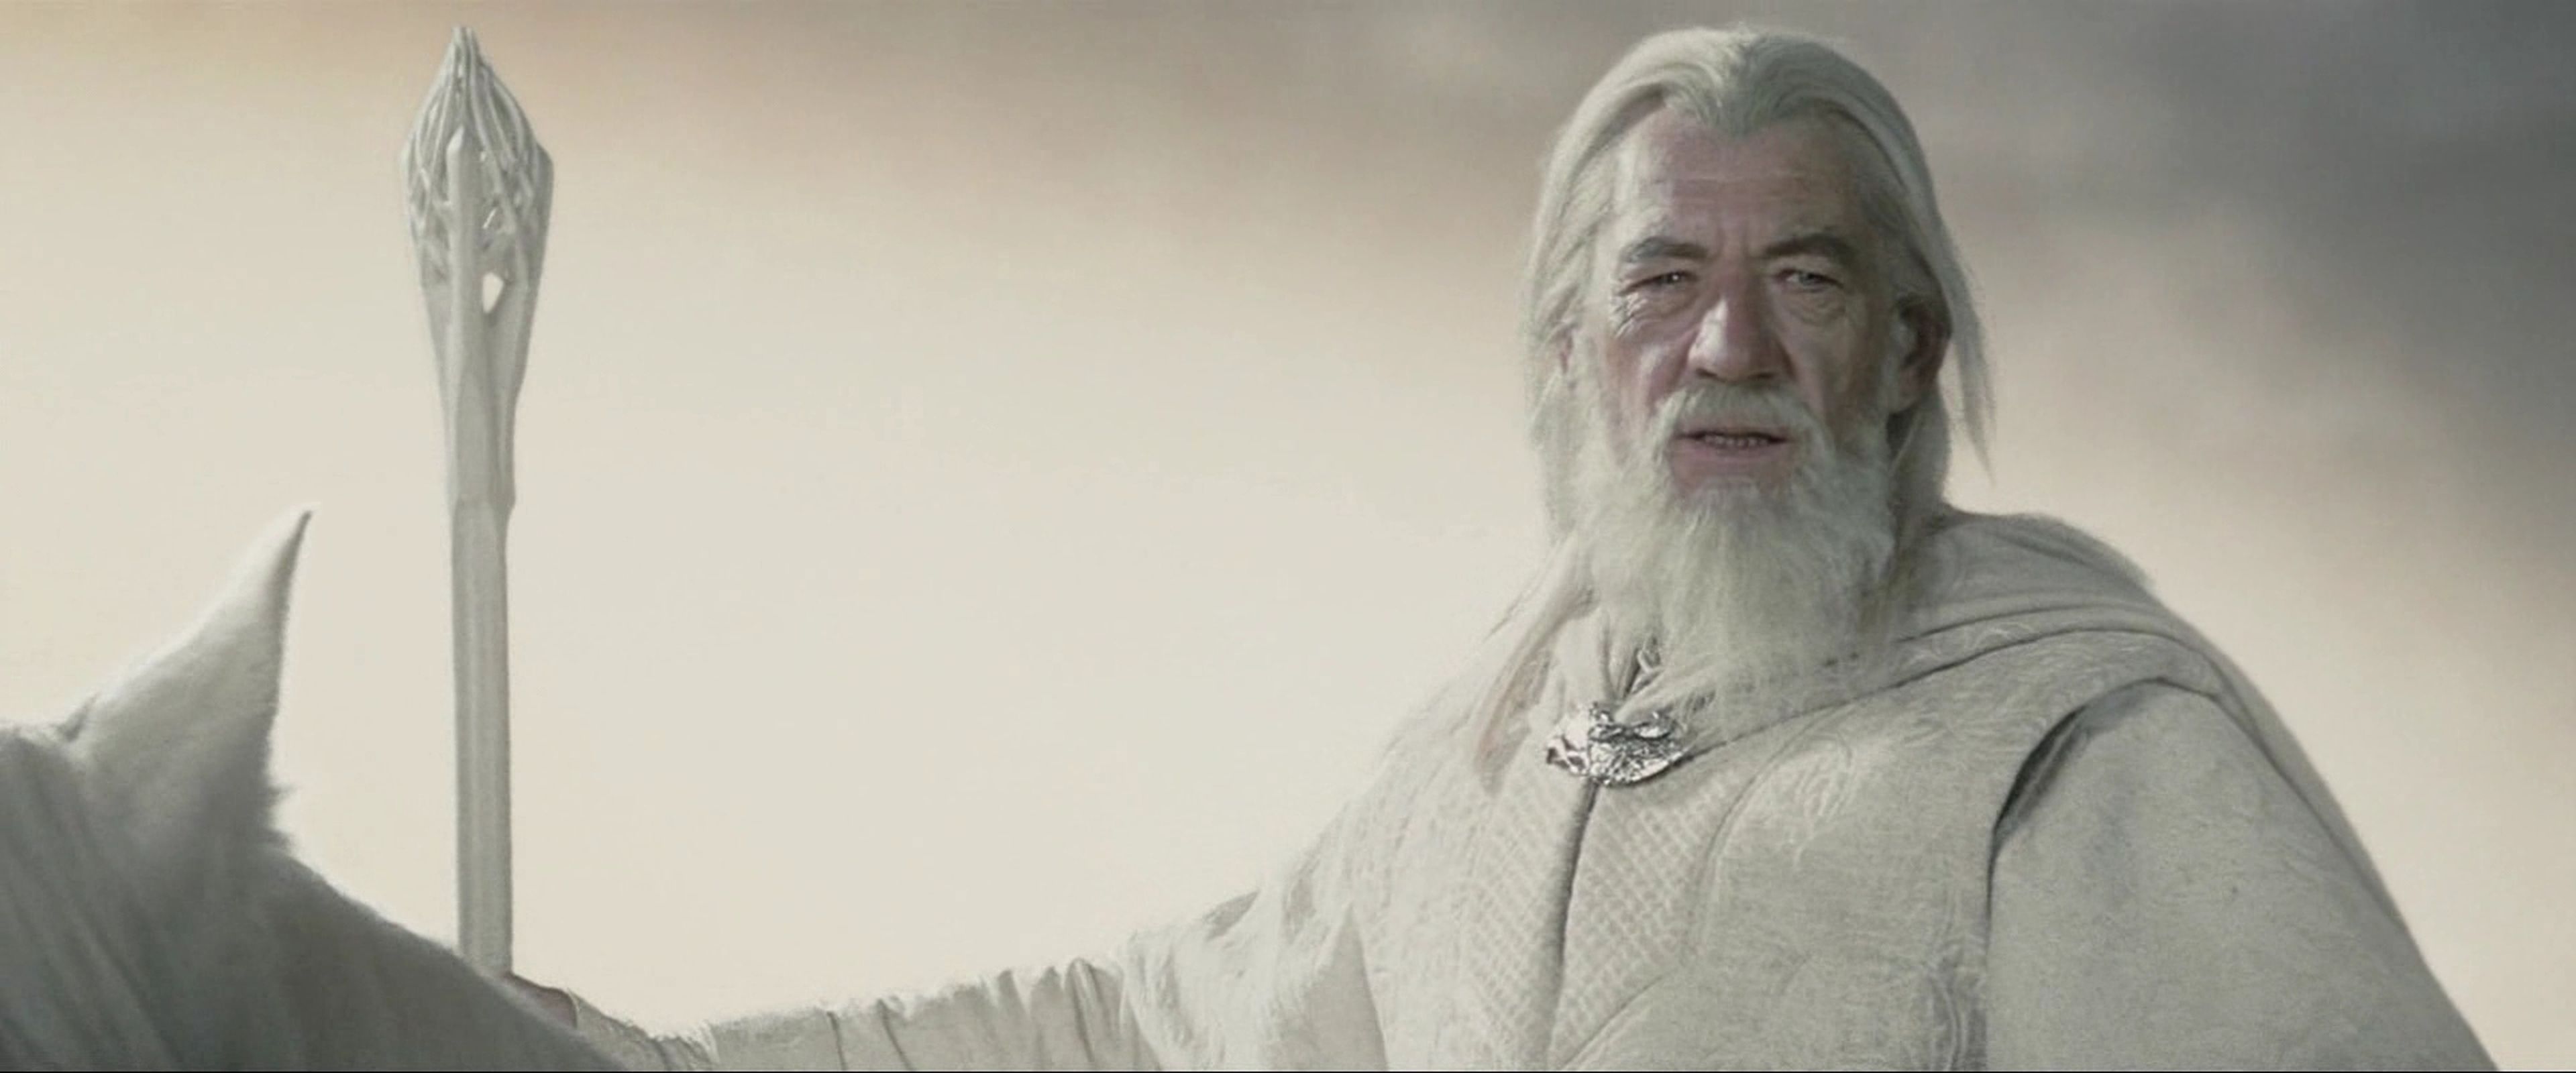 Gandalf el blanco